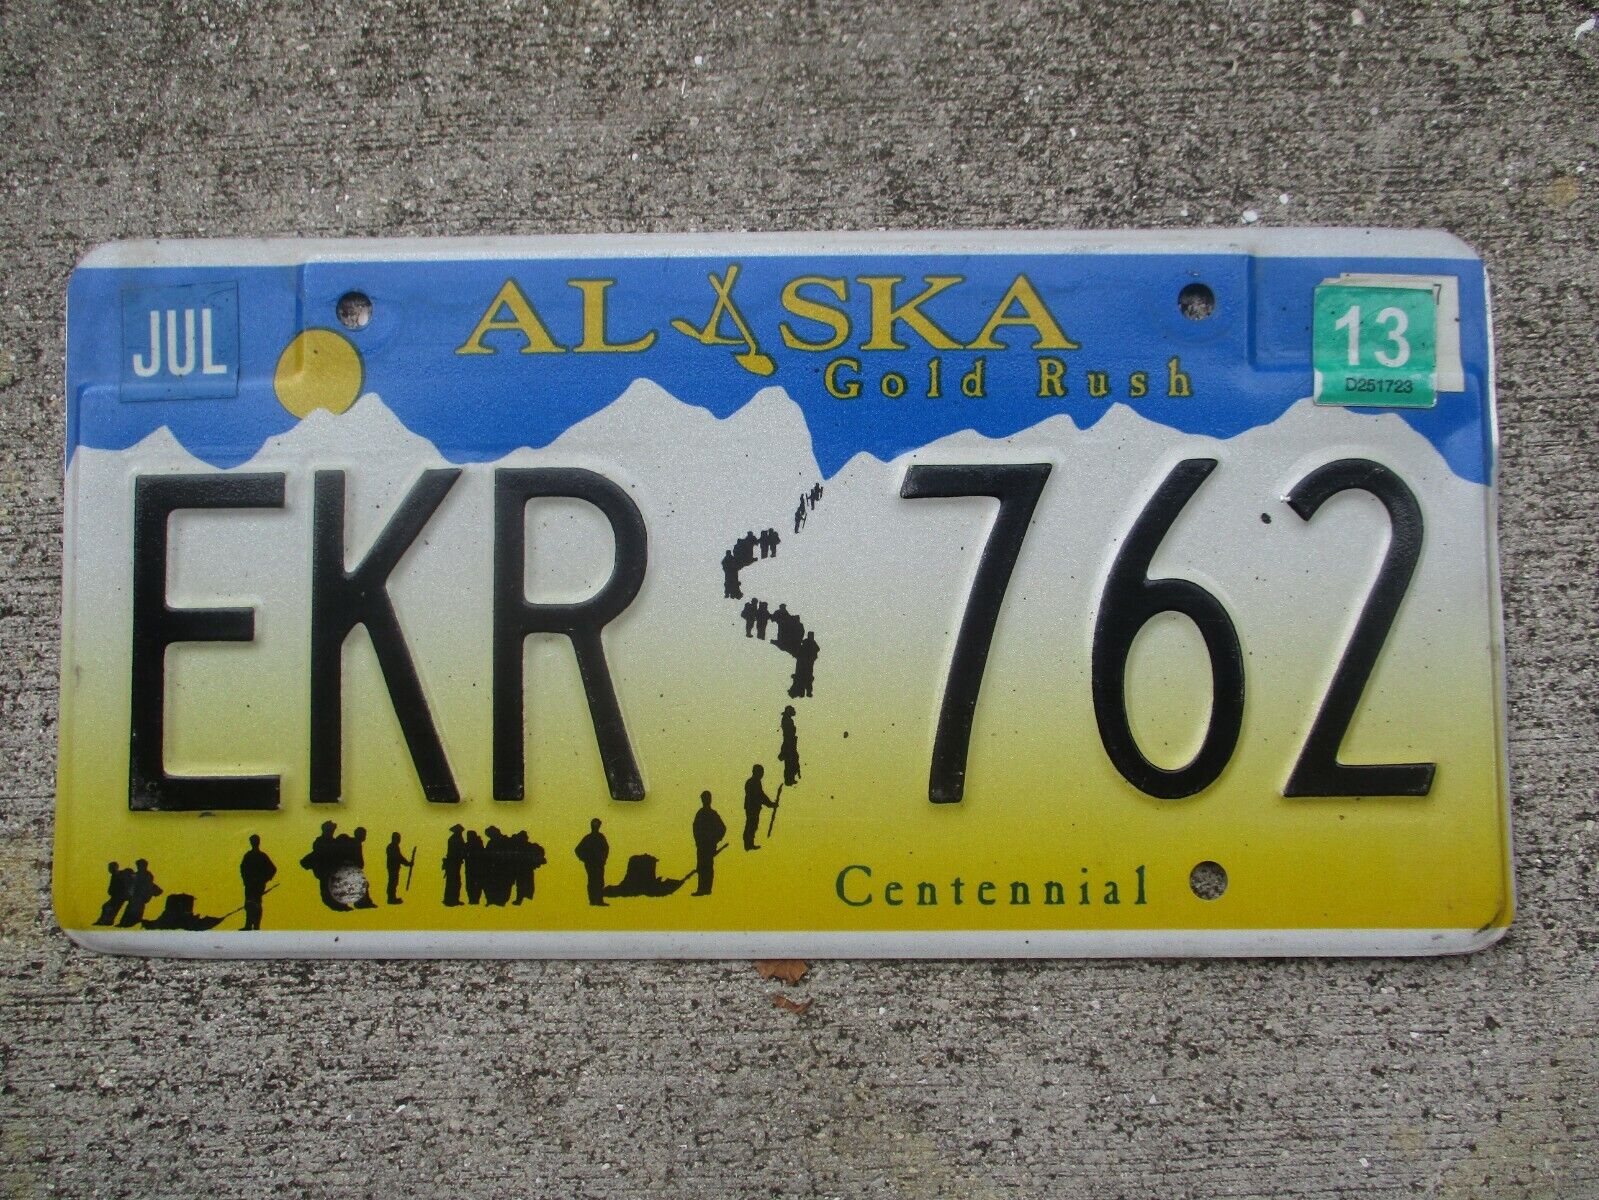 Alaska 2013 Gold Rush Centennial License Plate  #  Ekr  762